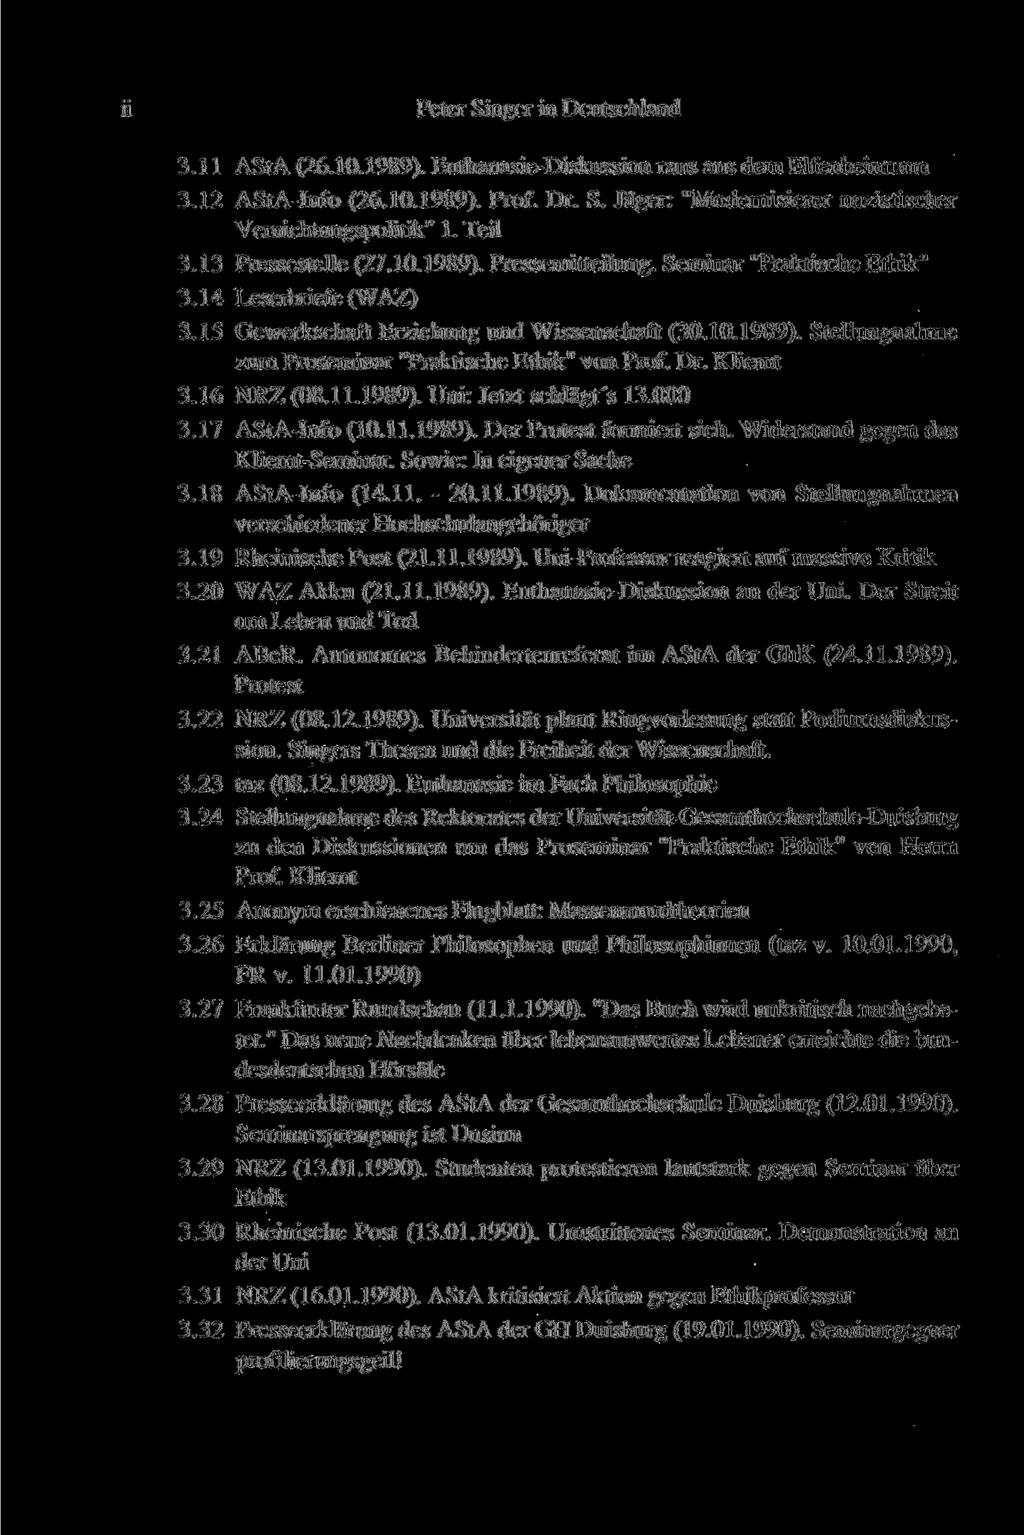 11 Peter Singer in Deutschland 3.11 AStA (26.10.1989). Euthanasie-Diskussion raus aus dem Elfenbeinturm 3.12 AStA-Info (26.10.1989). Prof. Dr. S. Jäger: "Modernisierer nazistischer Vernichtungspolitik" 1.